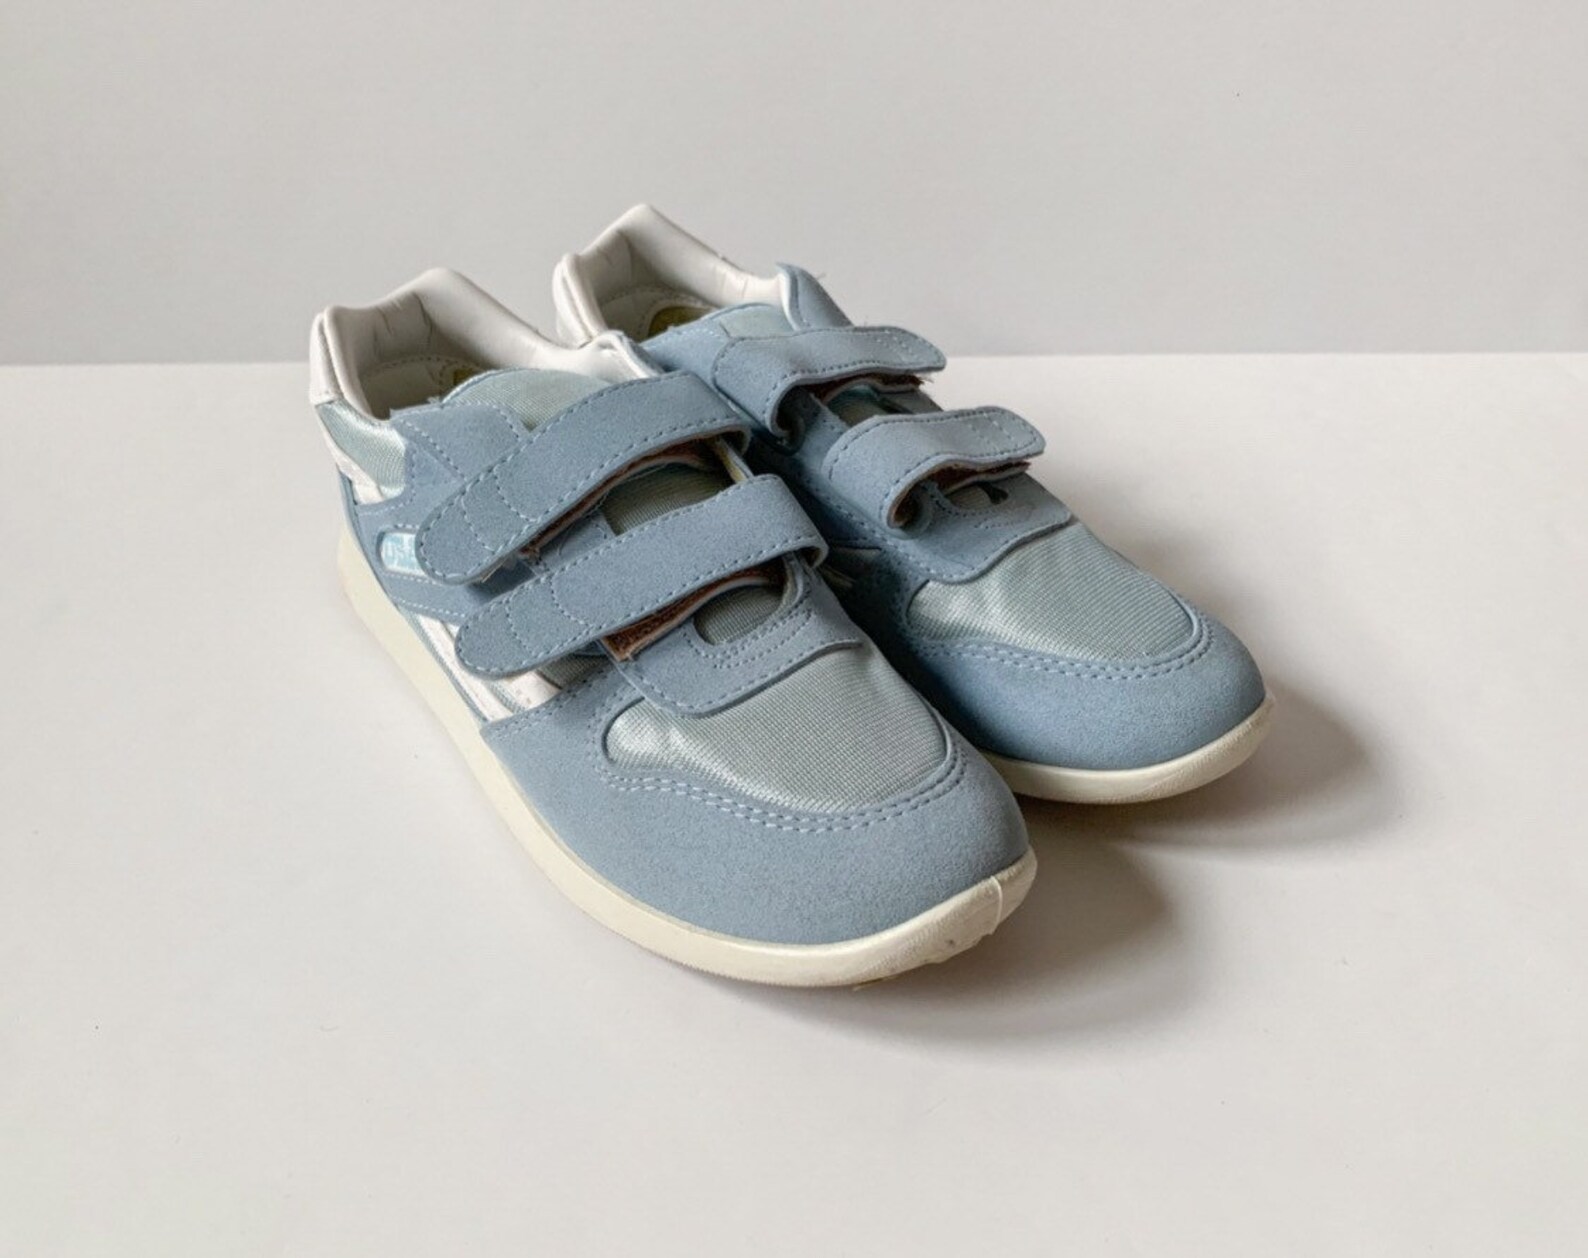 Vintage 1980s pastel blue Velcro tennis shoes / 80s blue | Etsy